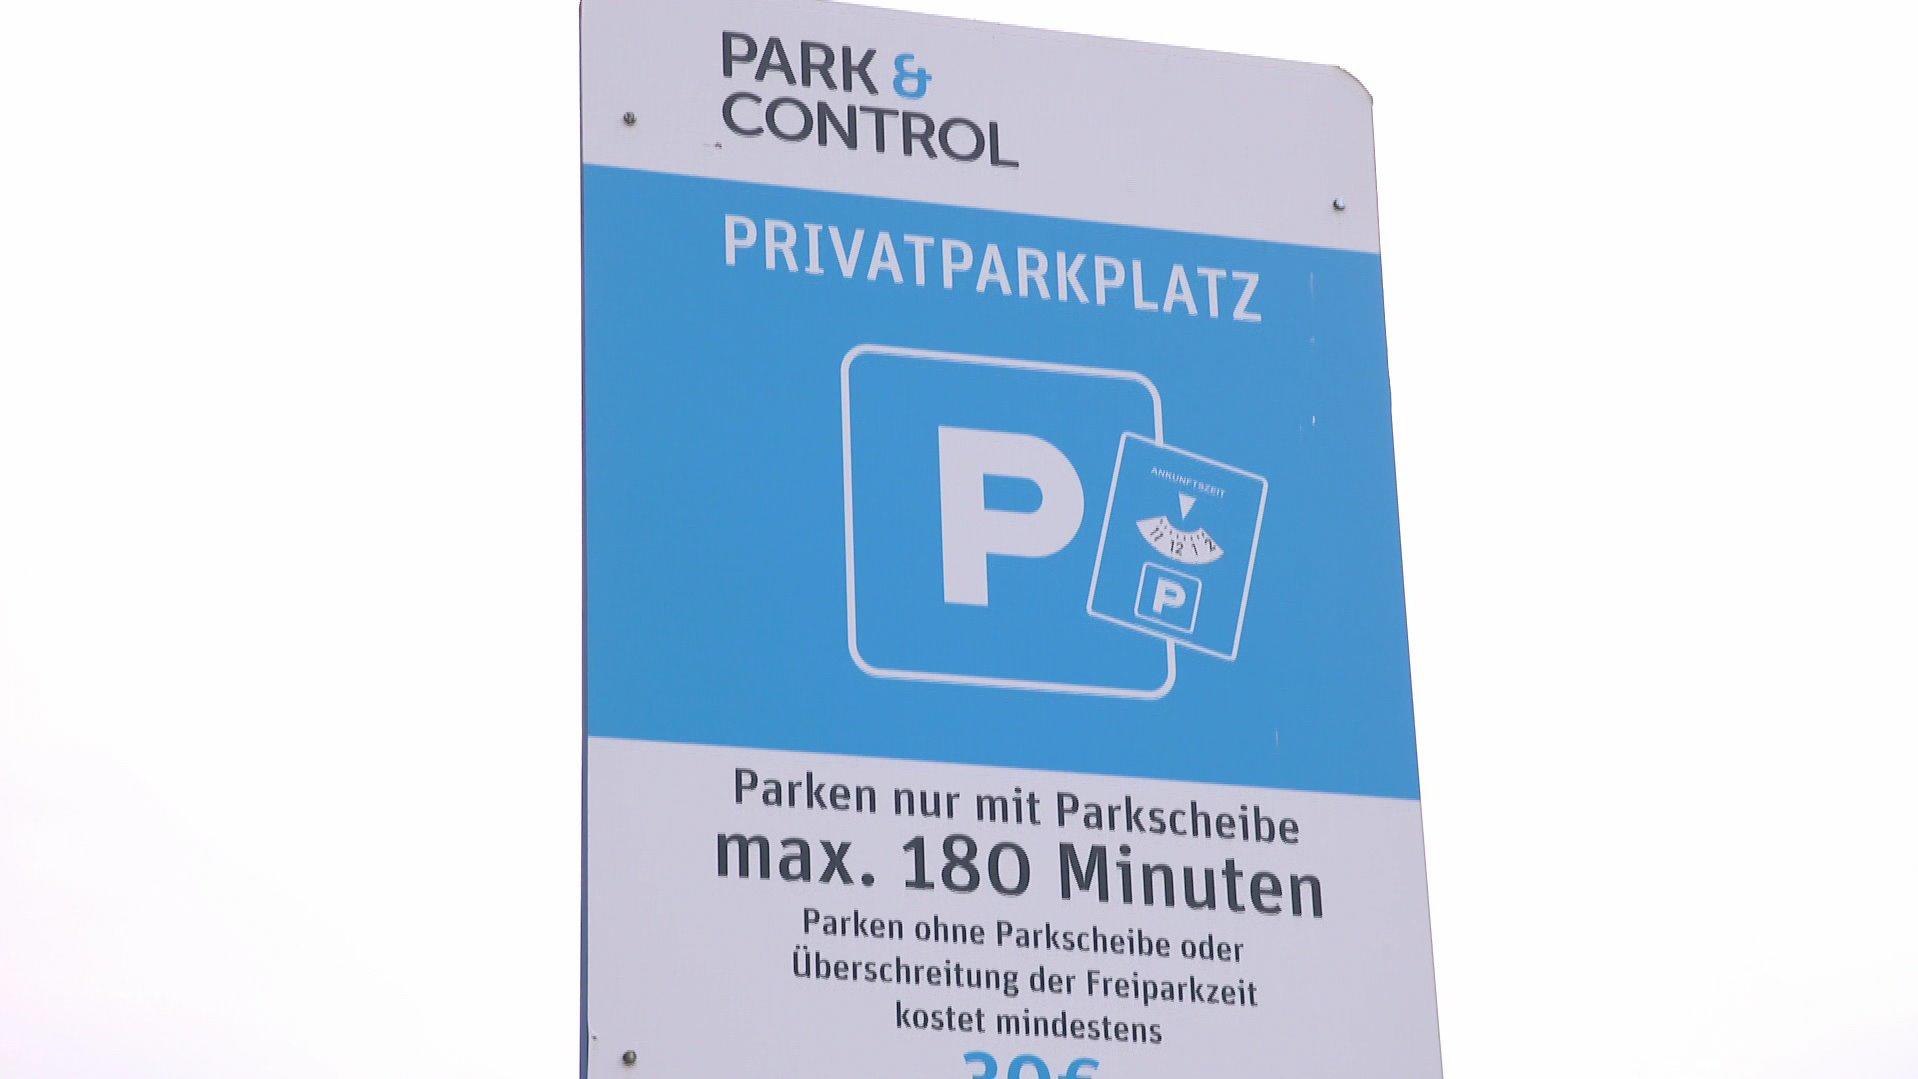 Schild eines "Park & Control" Parkplatzes